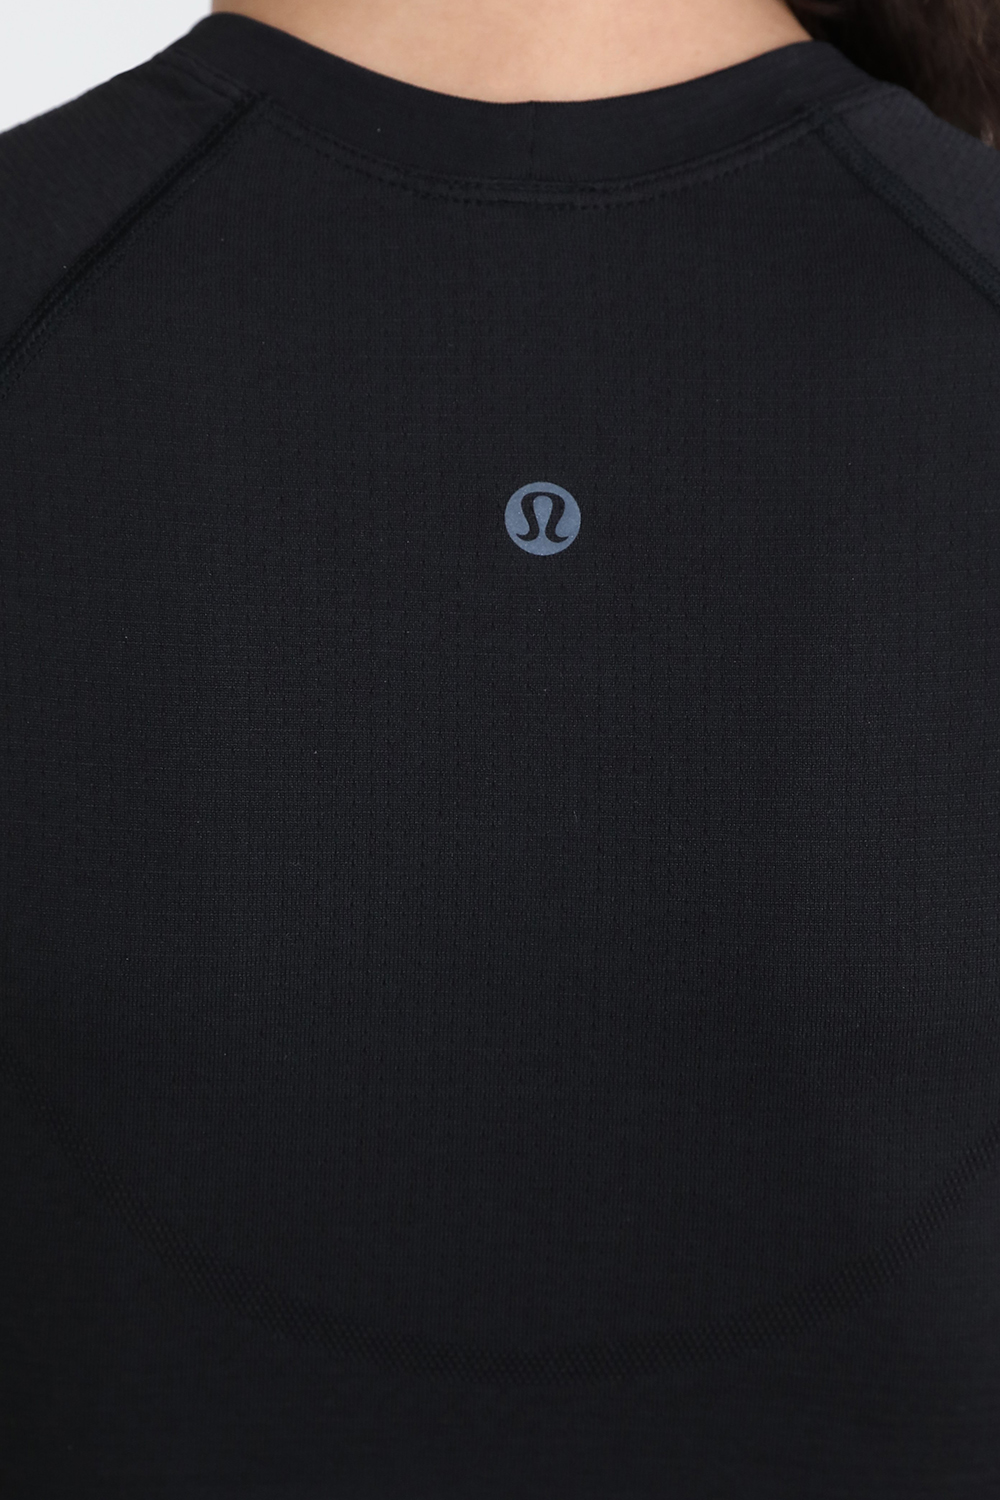 Swiftly Tech Cropped Short-Sleeve Shirt 2.0 LULULEMON